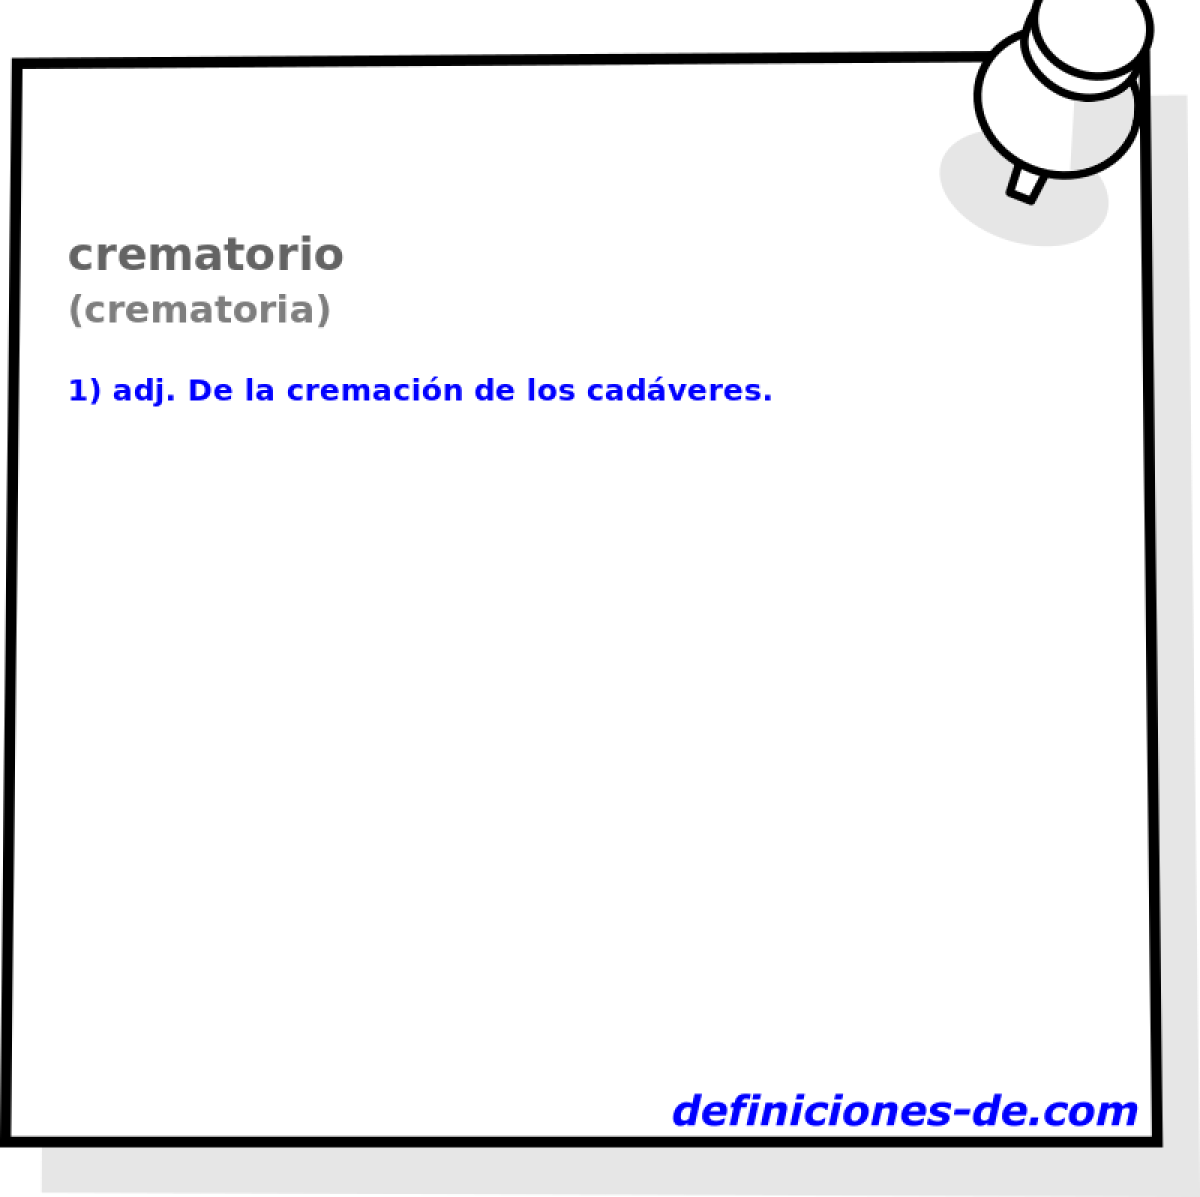 crematorio (crematoria)